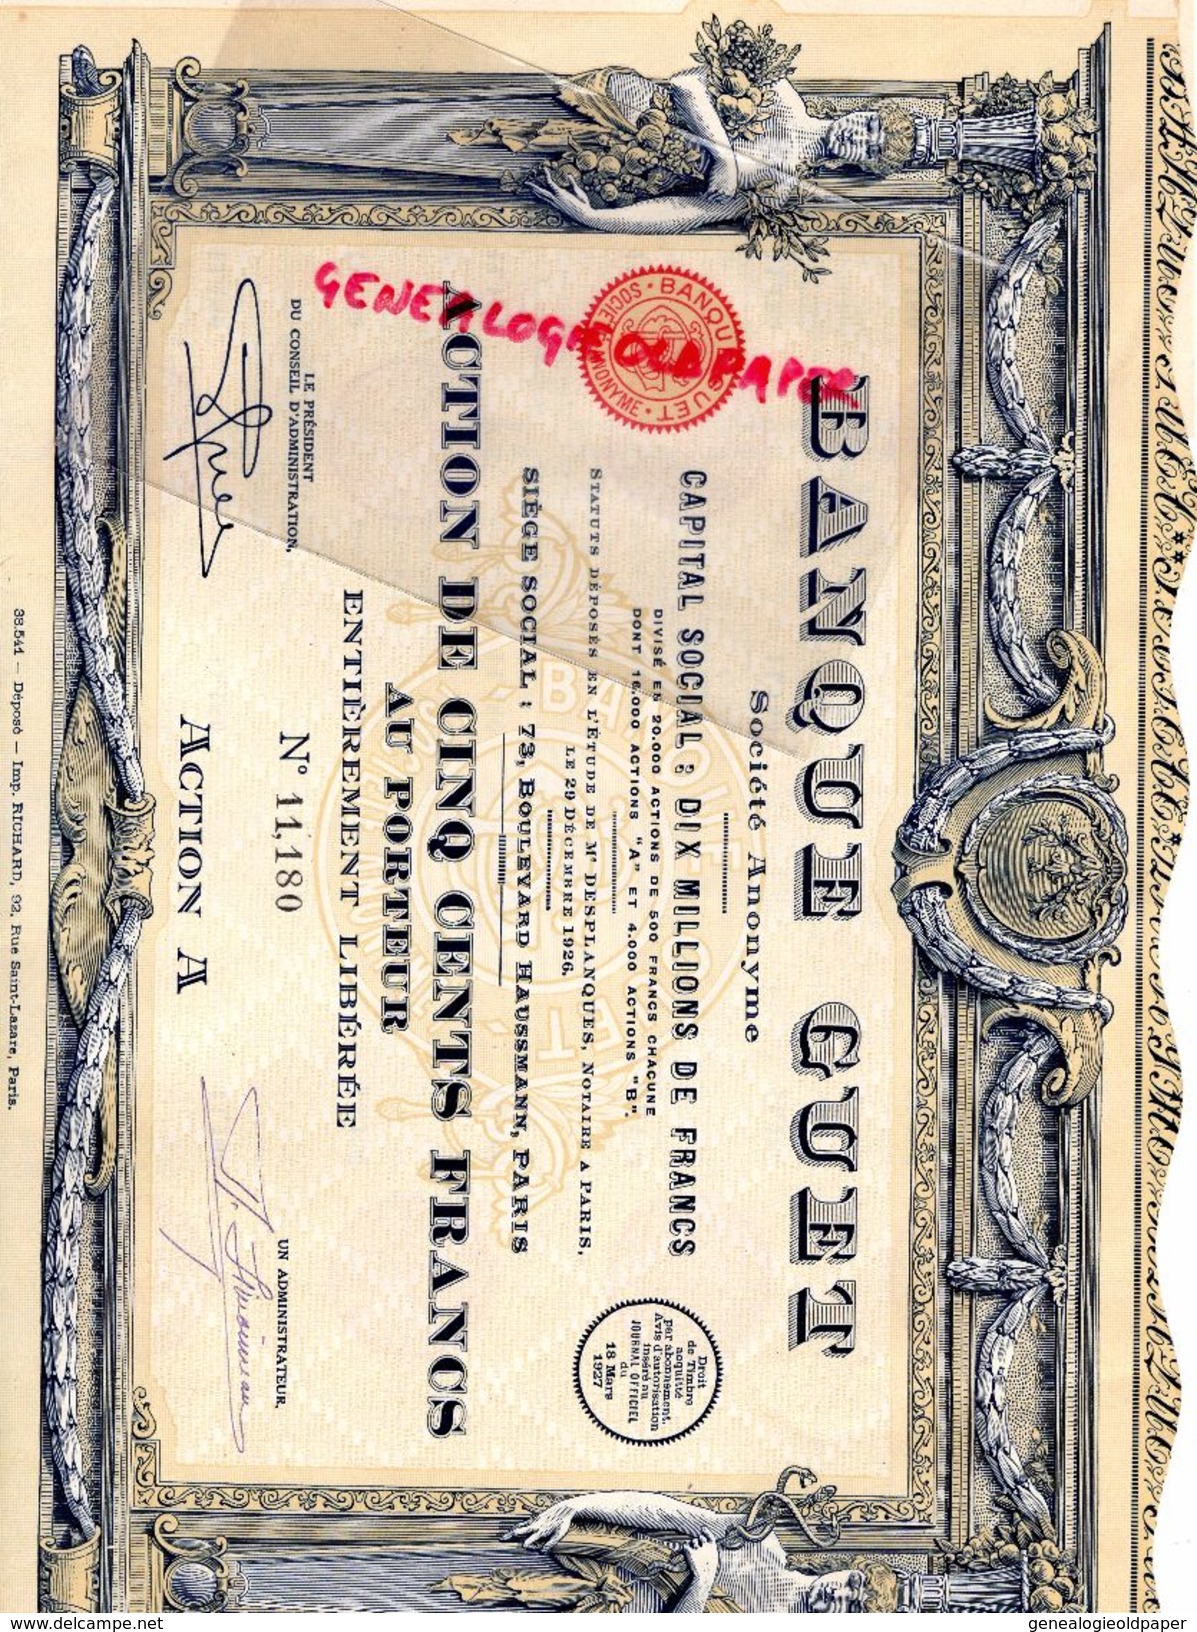 75 - PARIS- BANQUE GUET -ACTION 500 FRANCS- 1926- 73 BD HAUSSMANN- MAITRE DESPLANQUES NOTAIRE -IMPRIMERIE RICHARD - Banque & Assurance